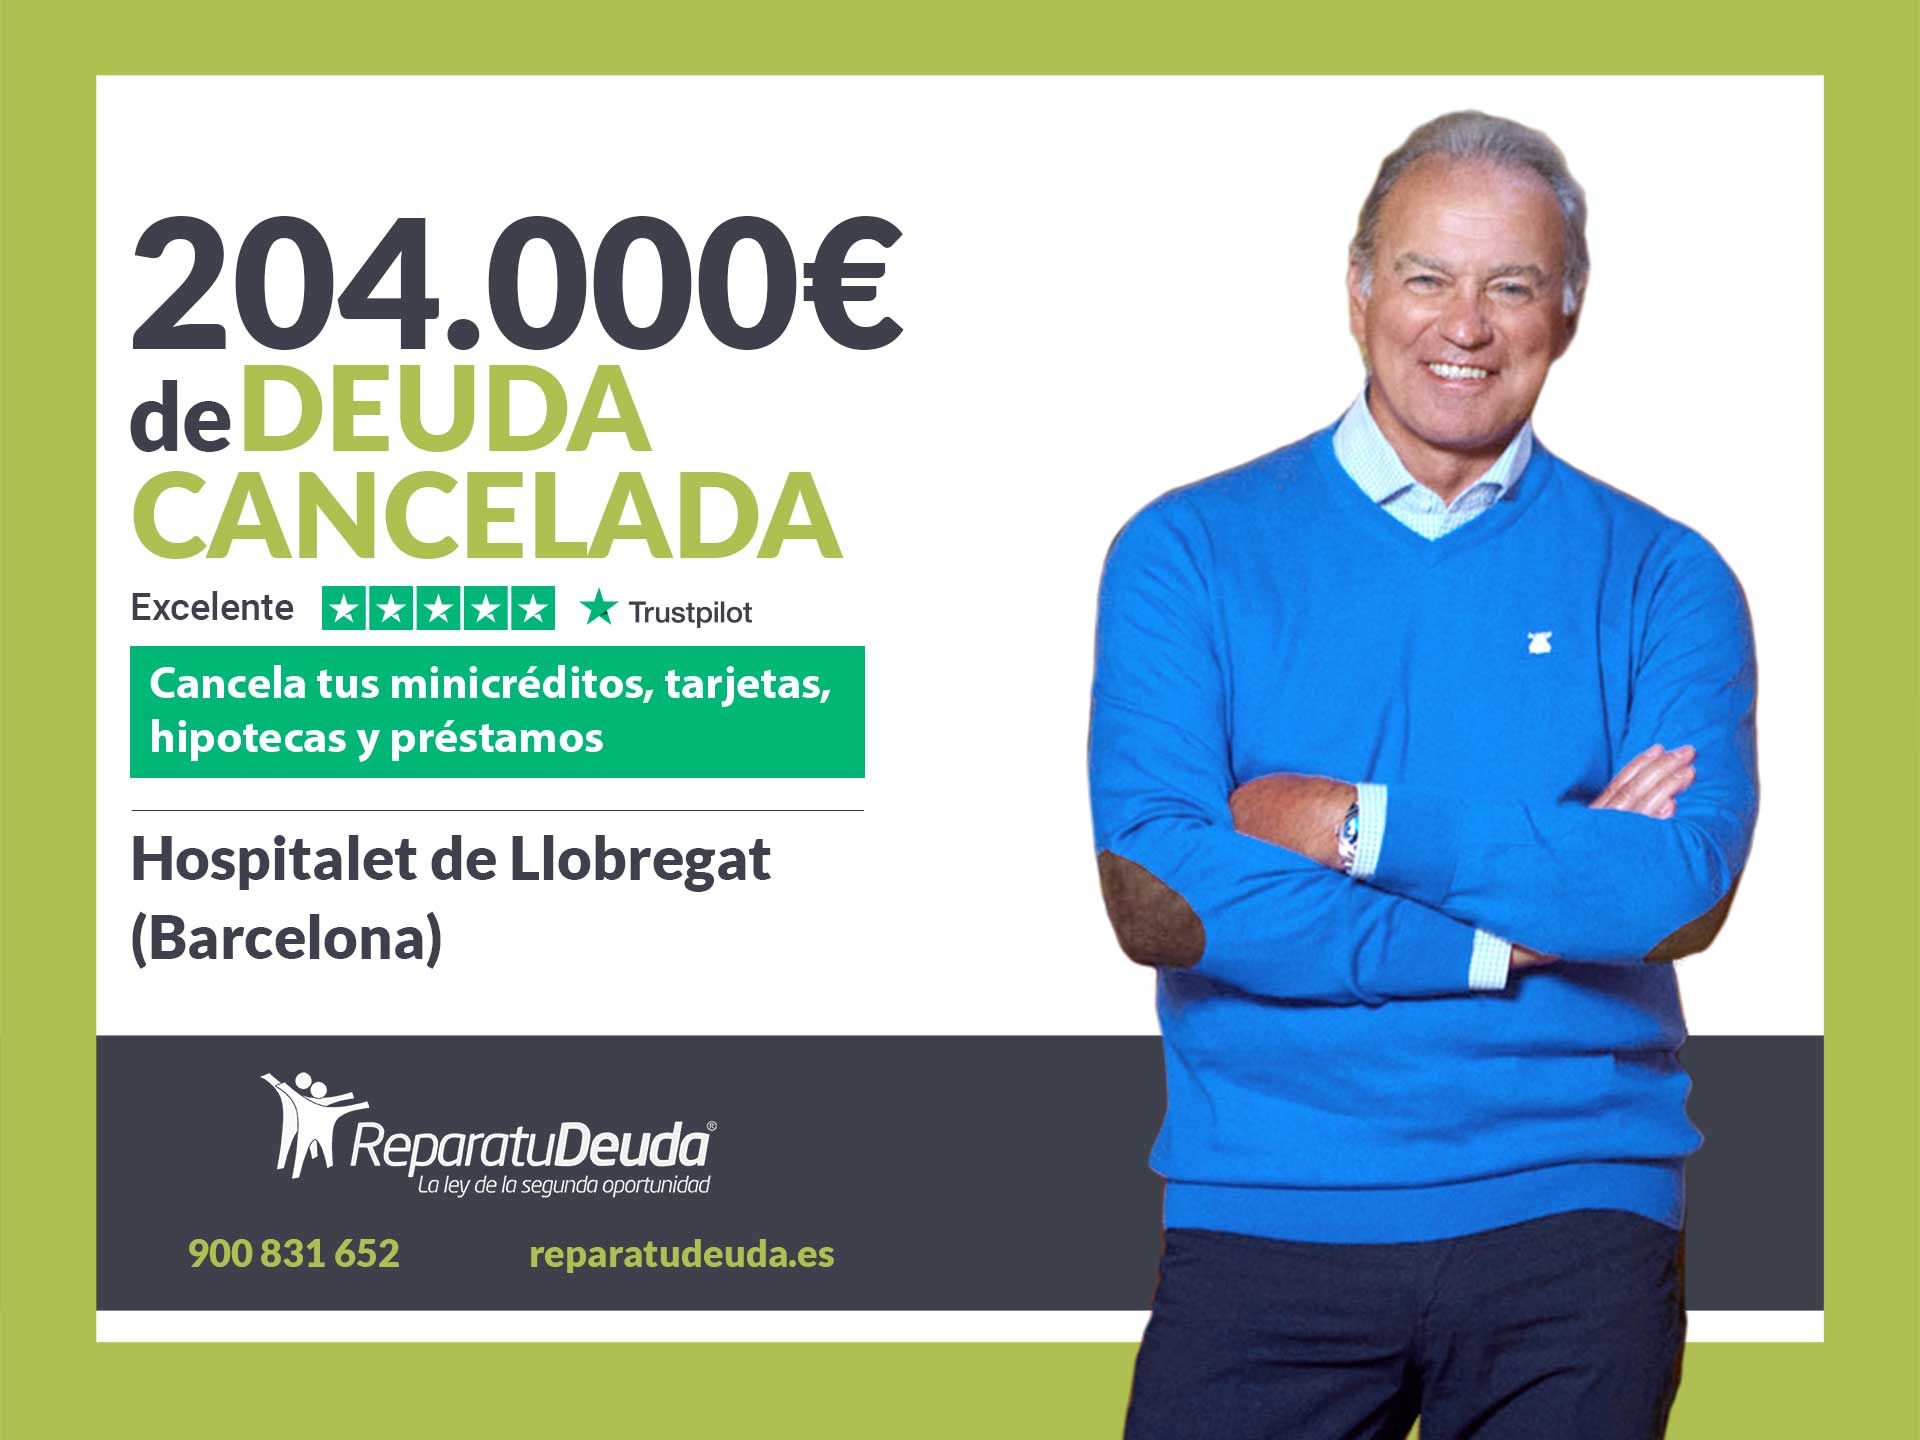 Repara tu Deuda cancela 204.000? en Hospitalet de Llobregat (Barcelona) con la Ley de Segunda Oportunidad